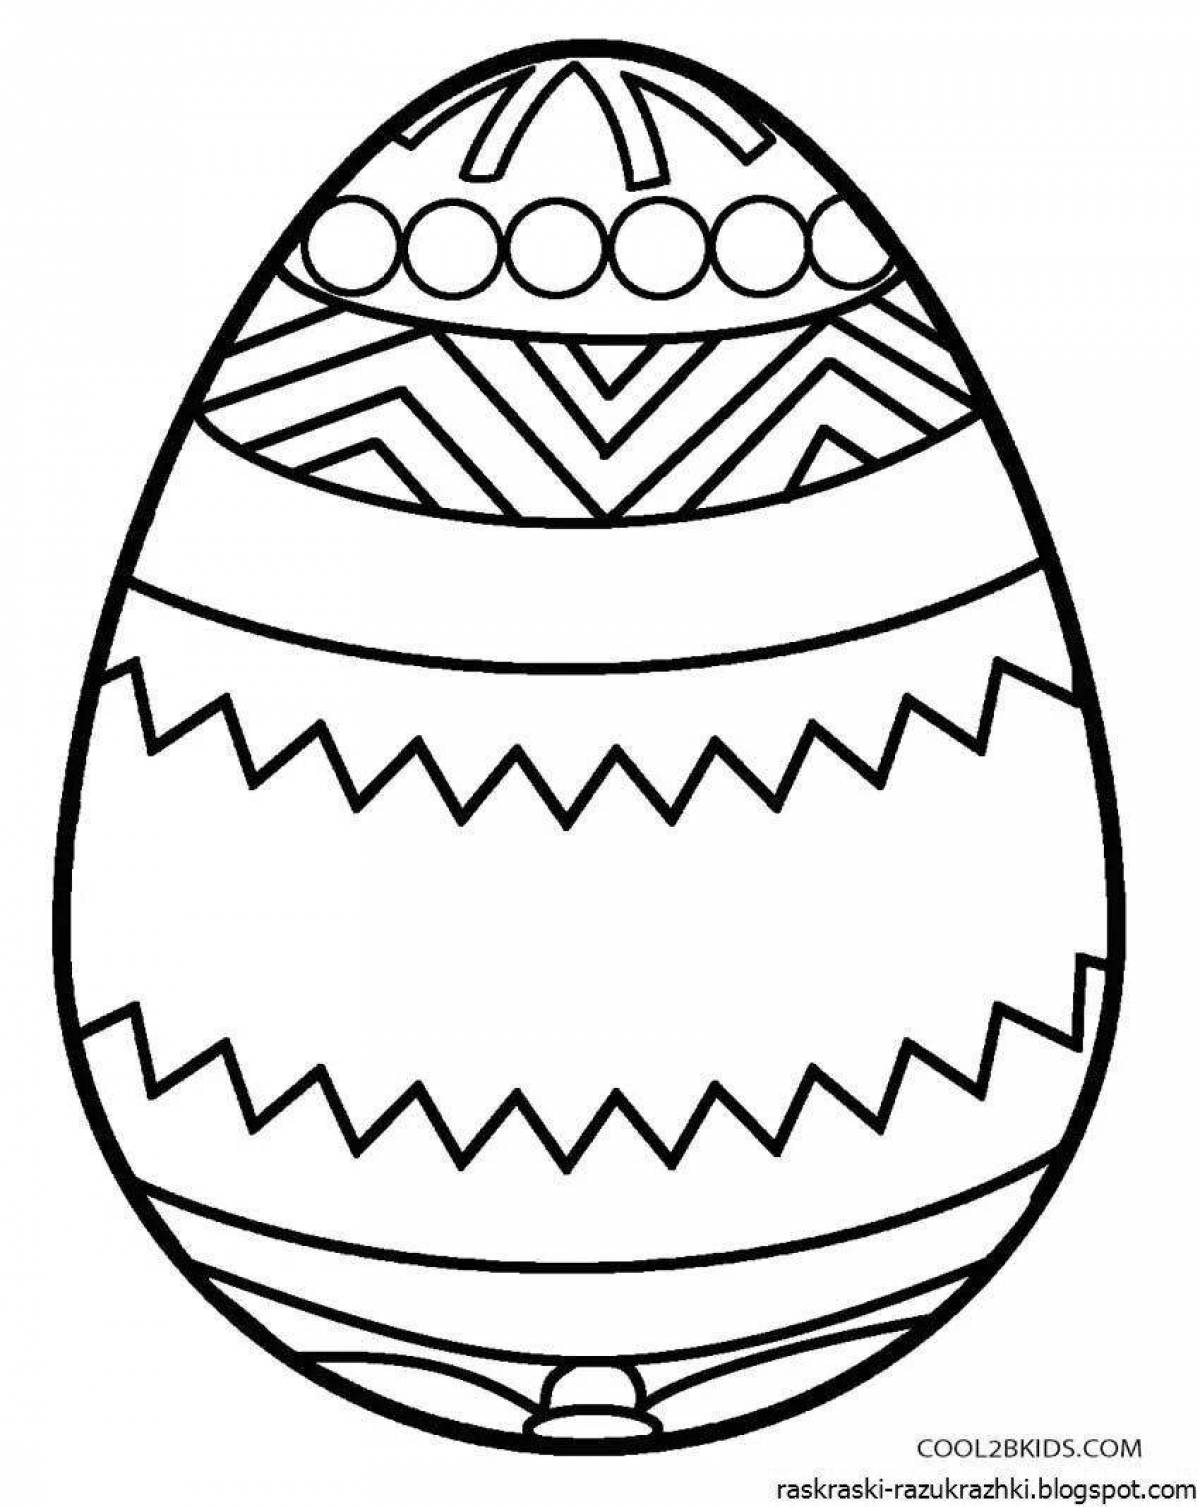 Креативная раскраска пасхальных яиц для детей